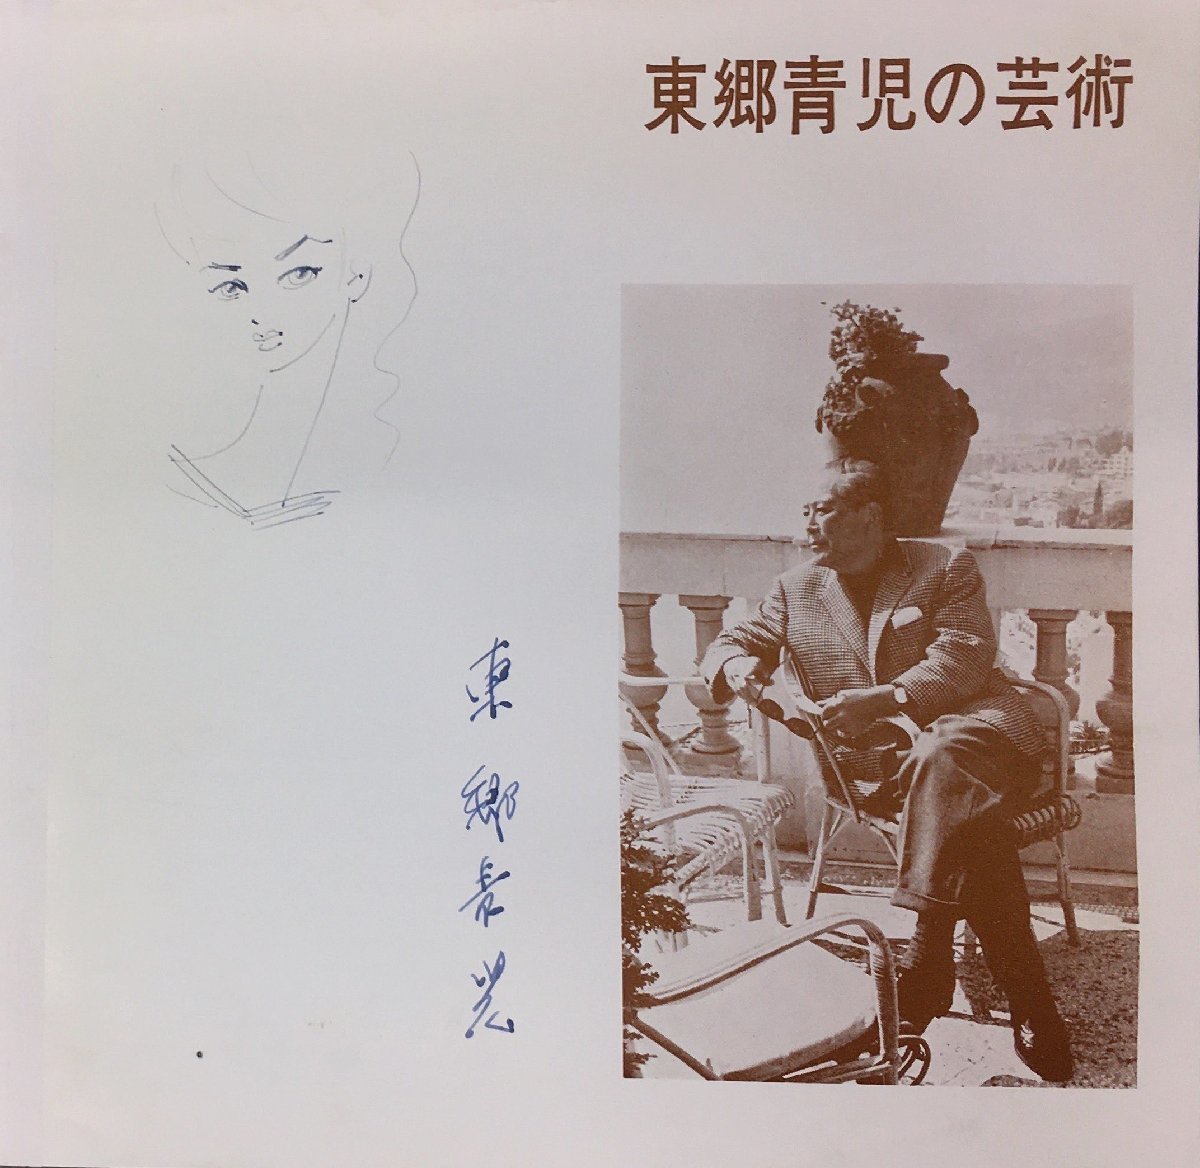 Garantiert authentisch, Togo Seiji, handgemaltes weibliches Gemälde, signiert Die Kunst von Togo Seiji, Kunstmuseum Niigata, 1969, Kunstwerk, Malerei, Porträts